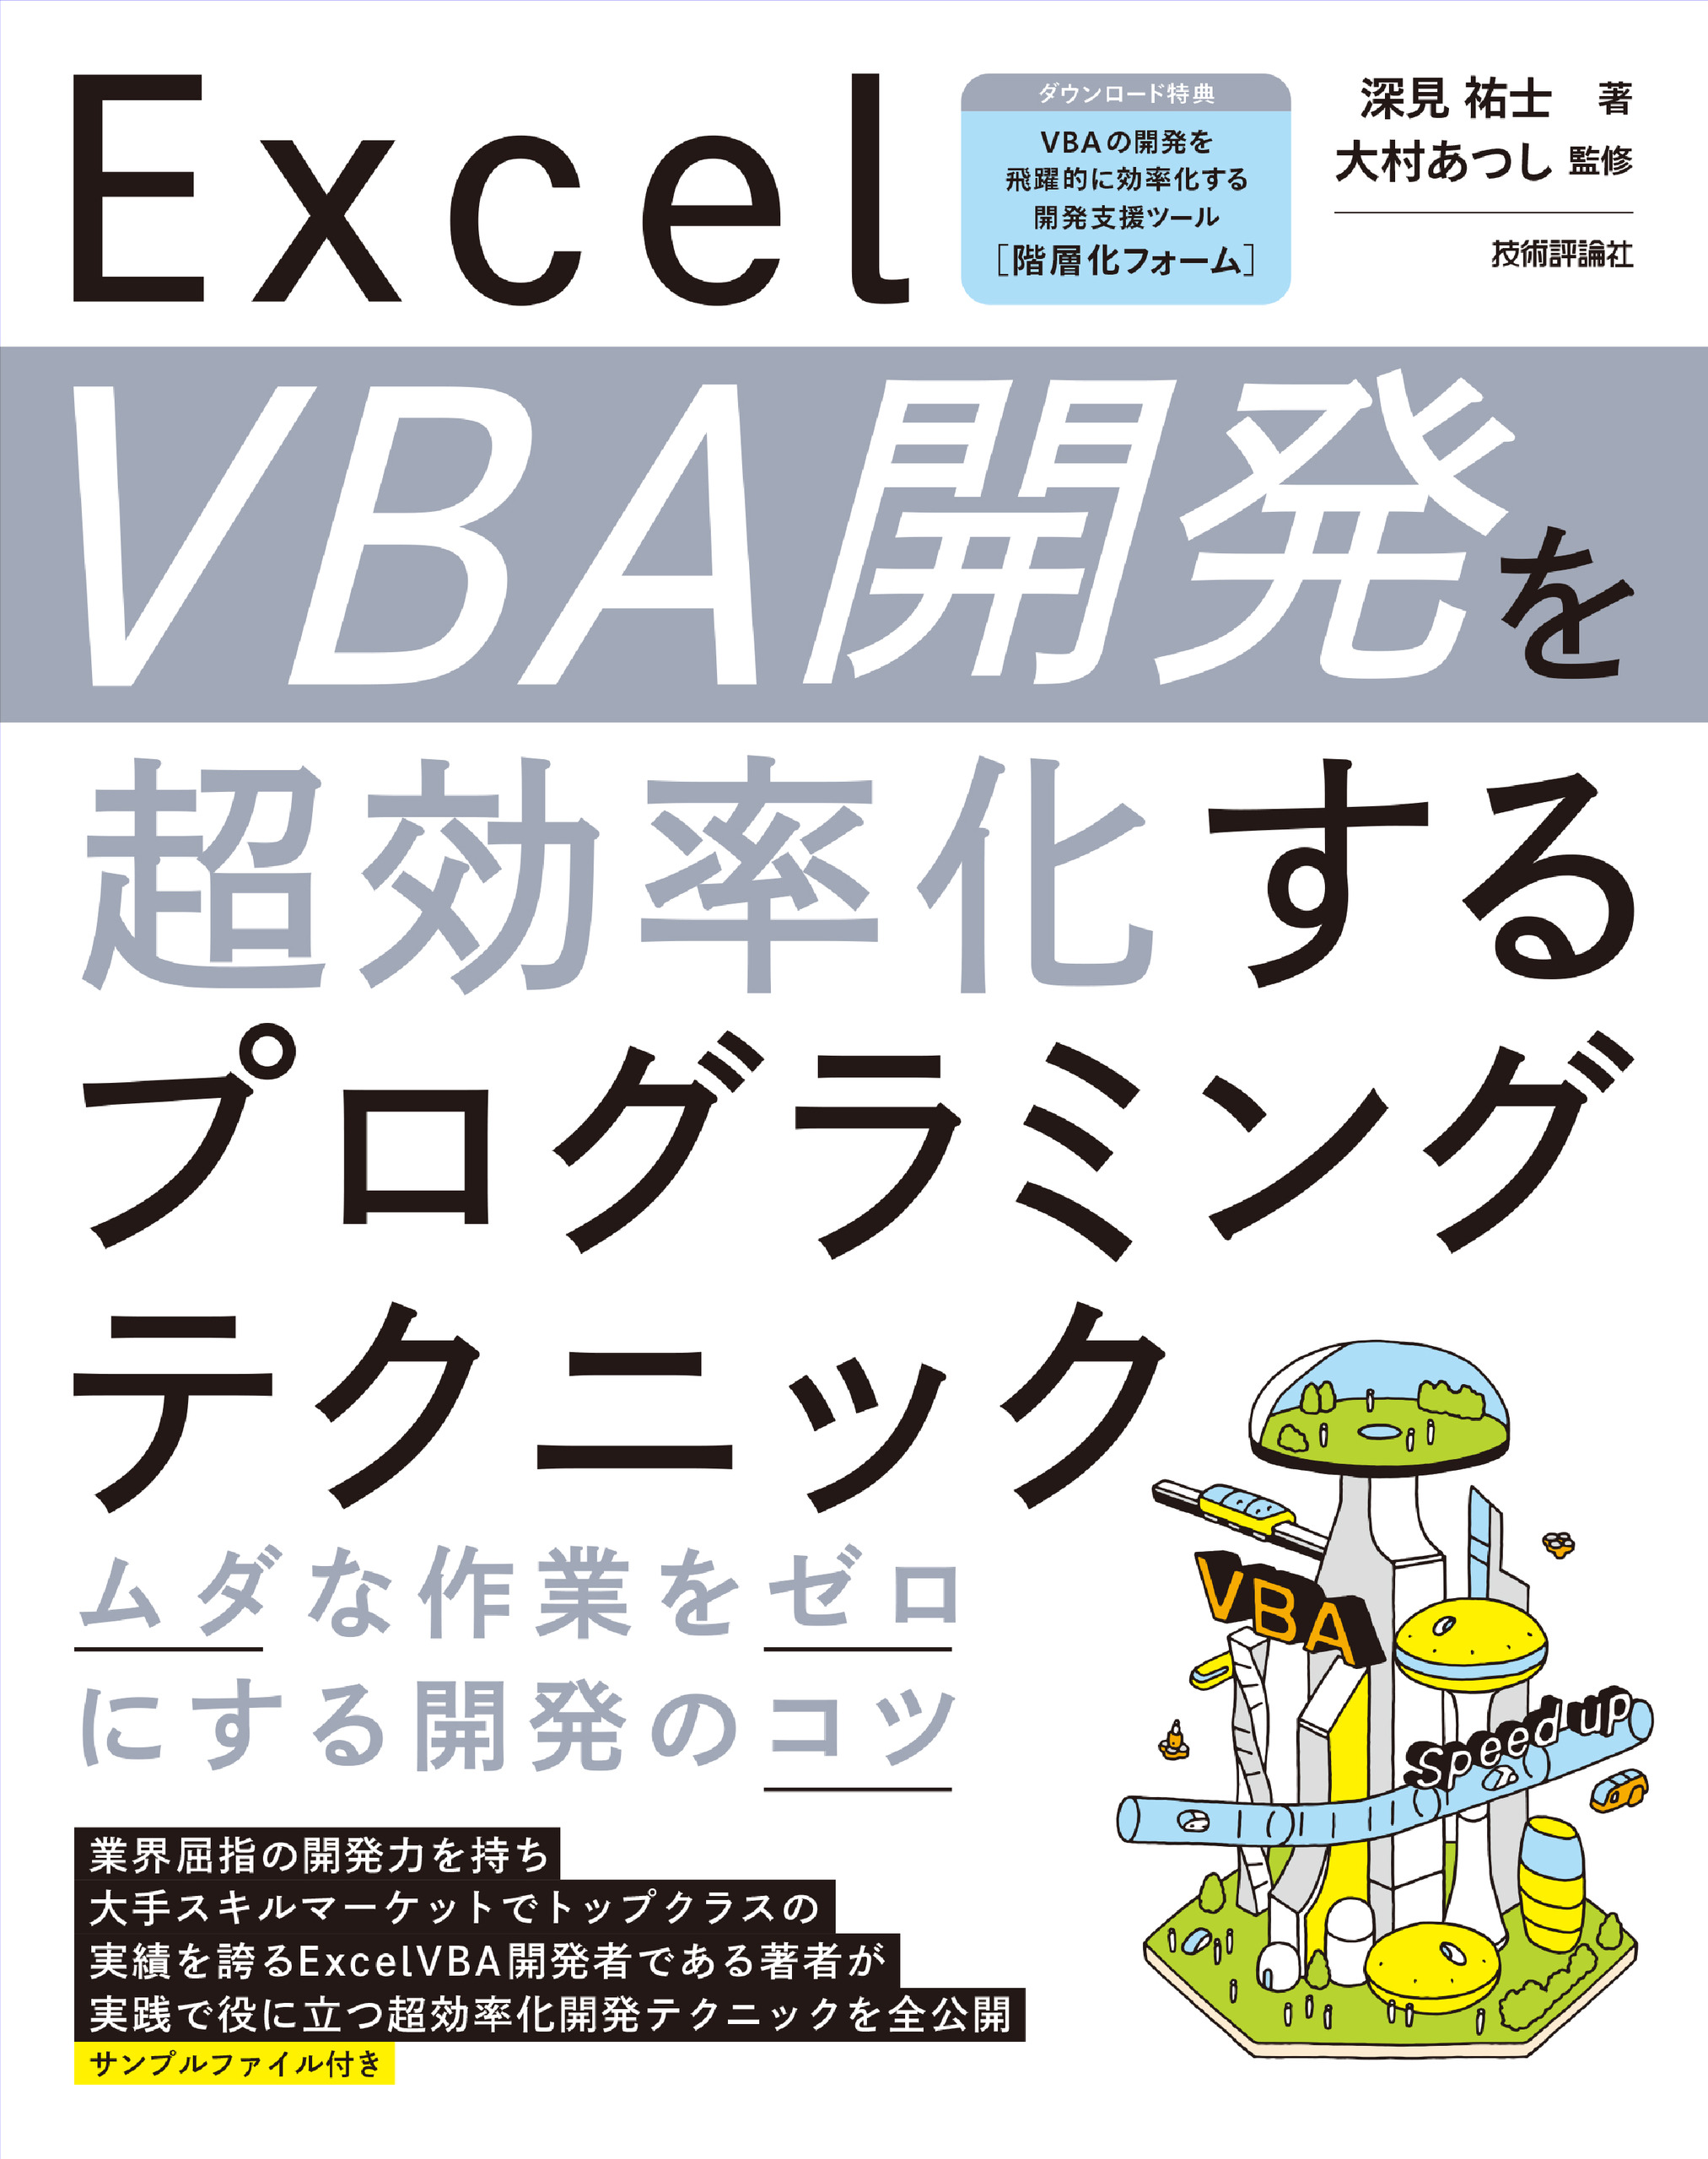 [A11087373]EXCELユーザーのためのVBAプログラミング入門 (日経BPパソコンベストムック) 大村 あつし